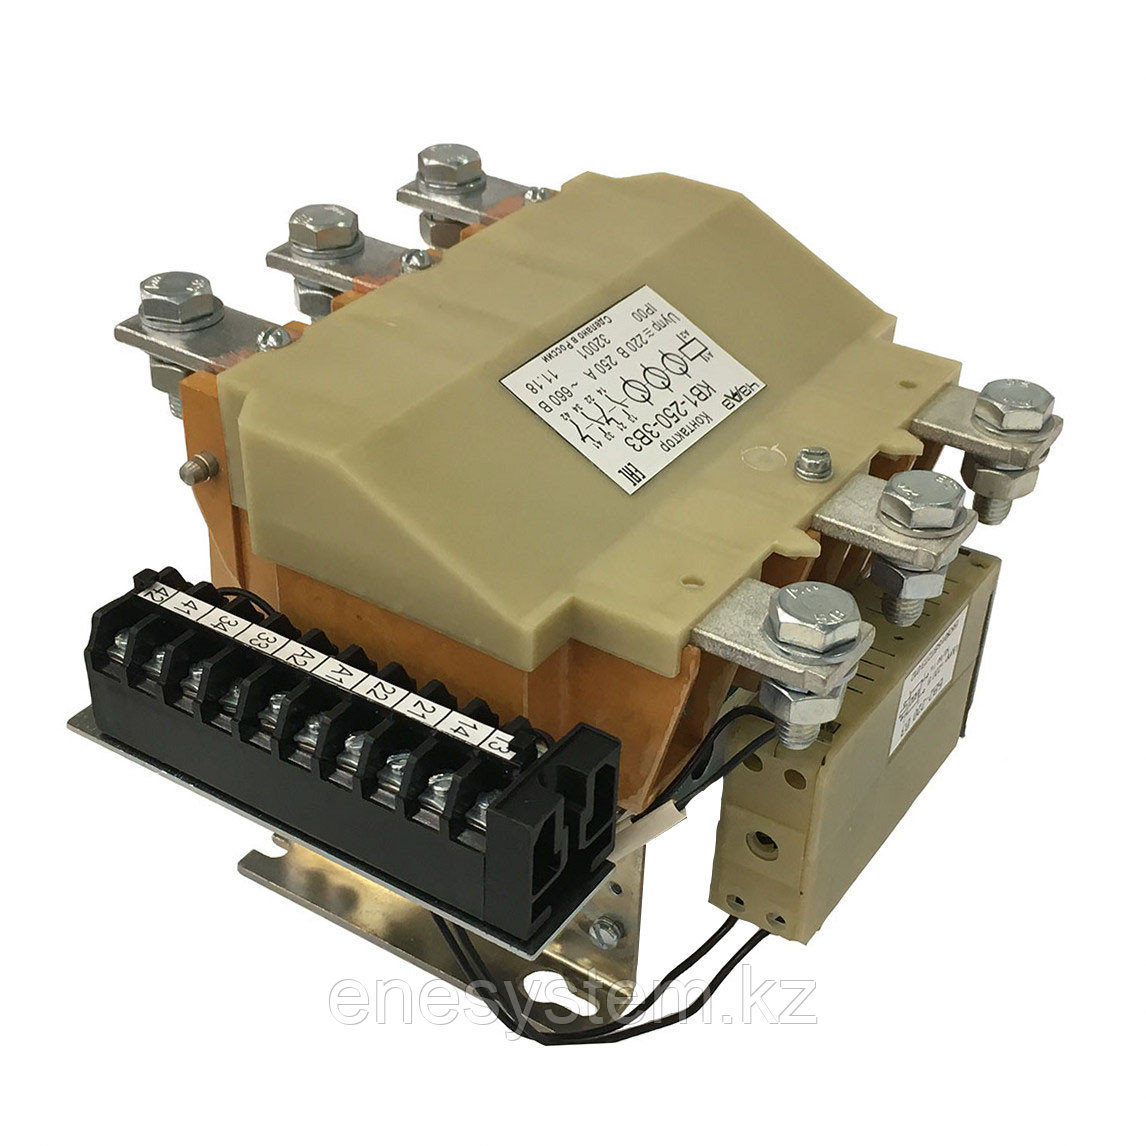 Контакторы вакуумные трехкамерные реверсивные КВ-1-400-3Р